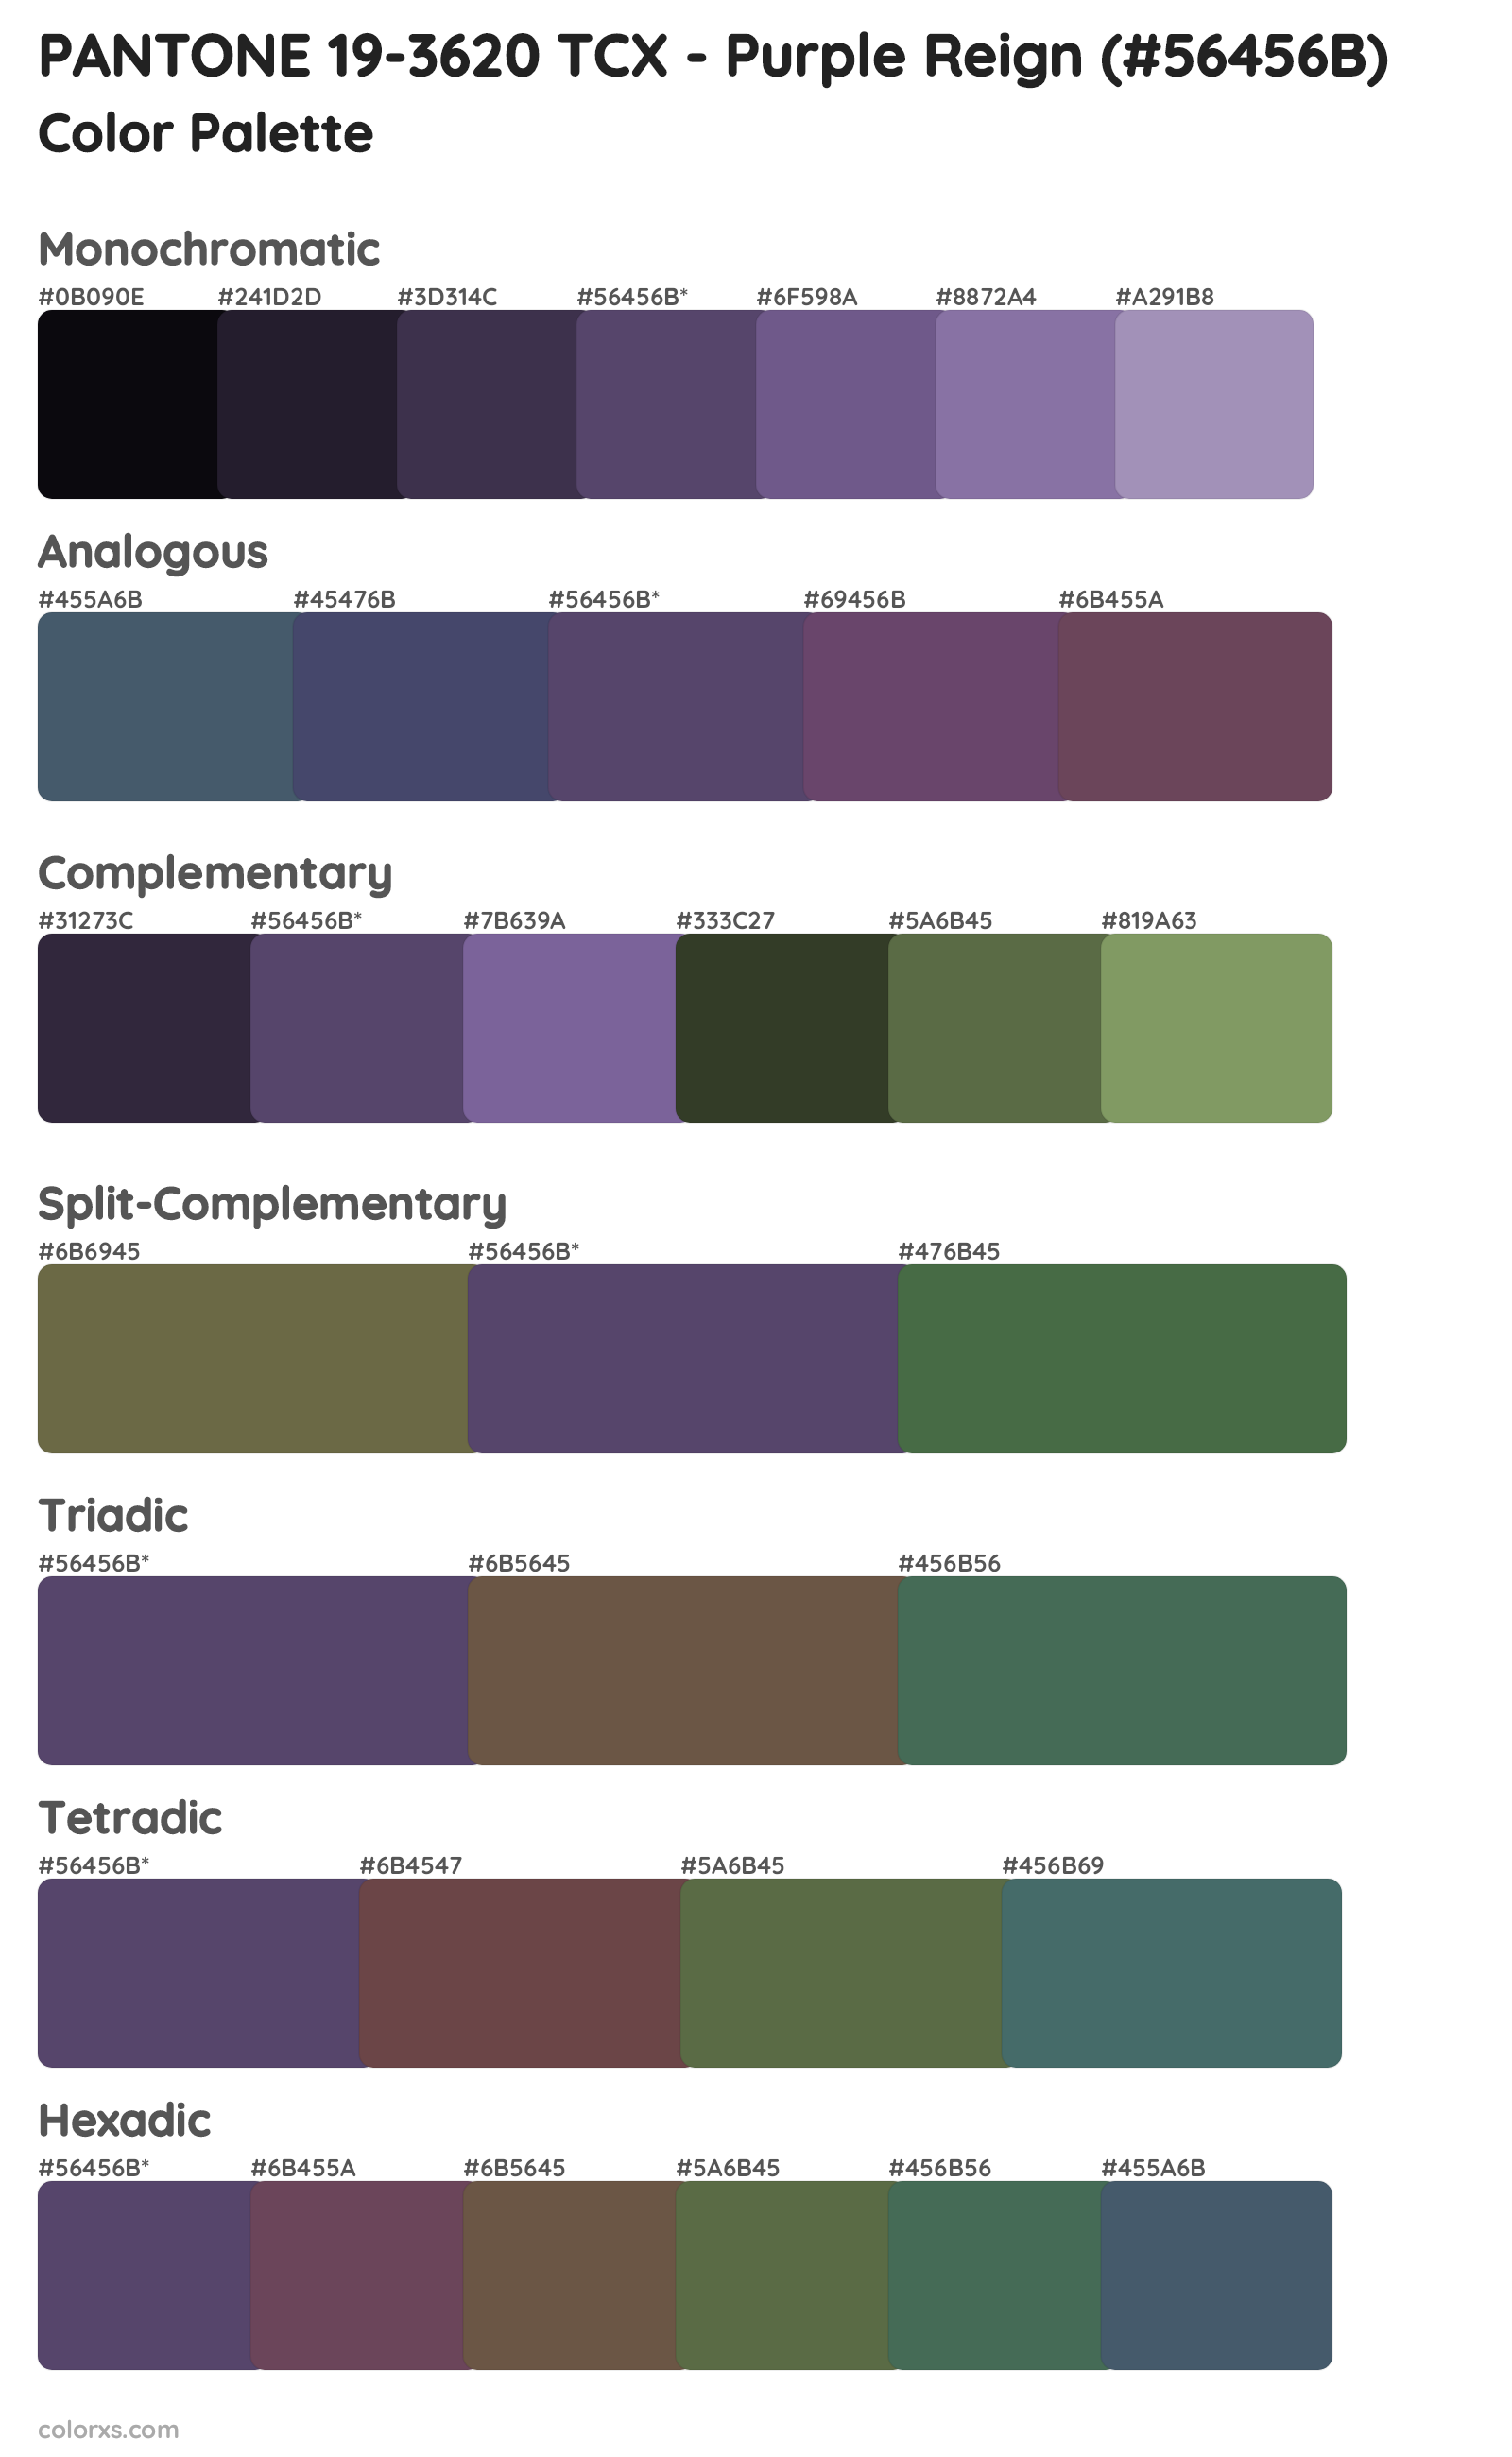 PANTONE 19-3620 TCX - Purple Reign Color Scheme Palettes